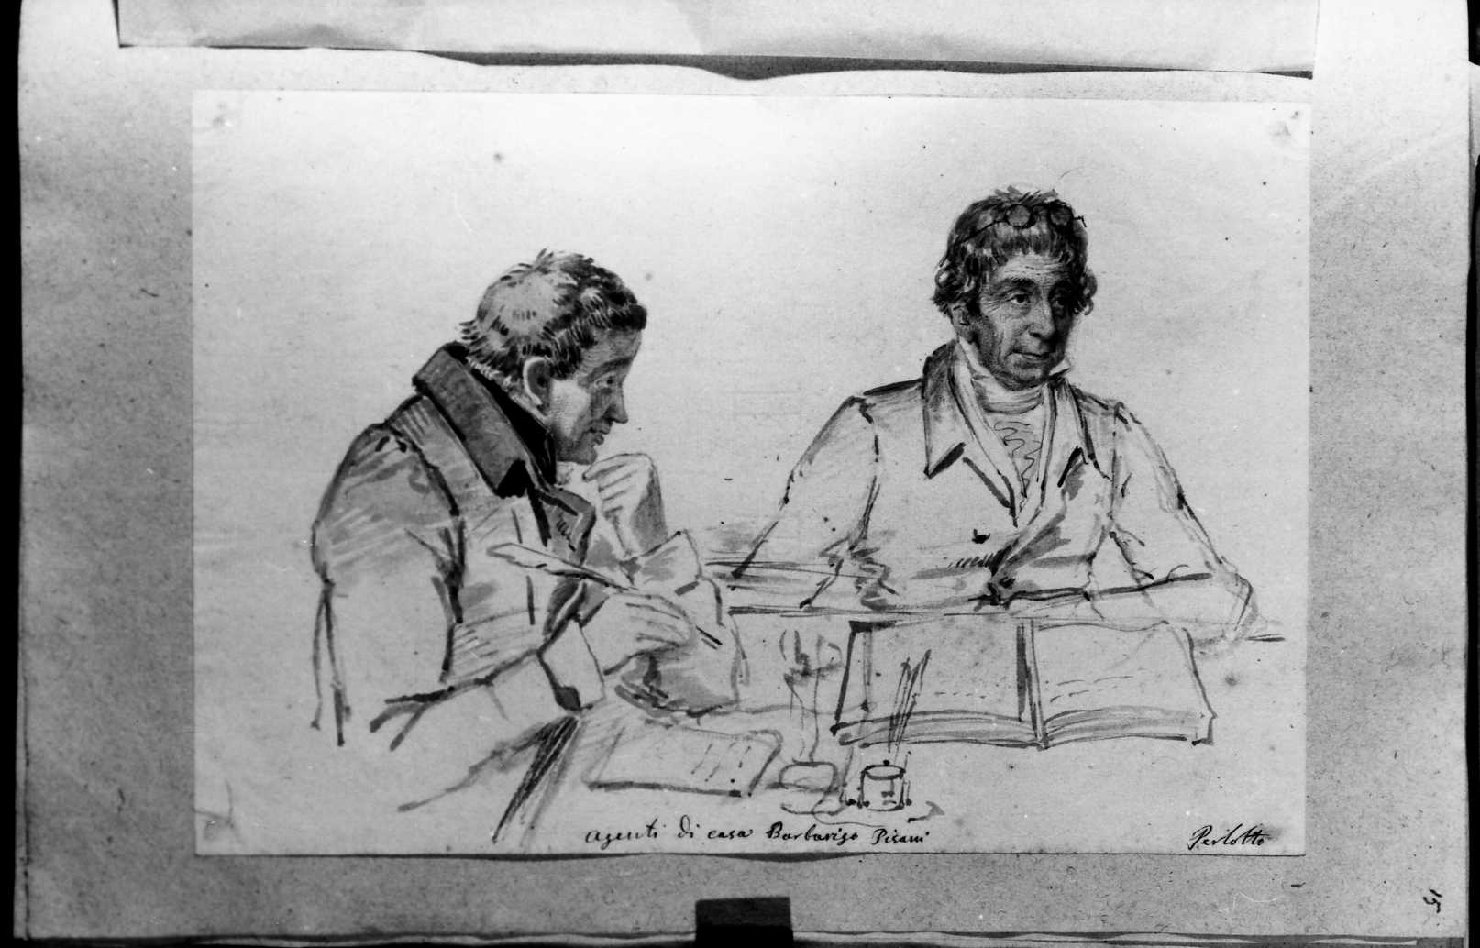 Agenti di casa Barbarigo Pisani, ritratto di uomini (disegno, serie) di Perlotto Tito Catone (sec. XIX)